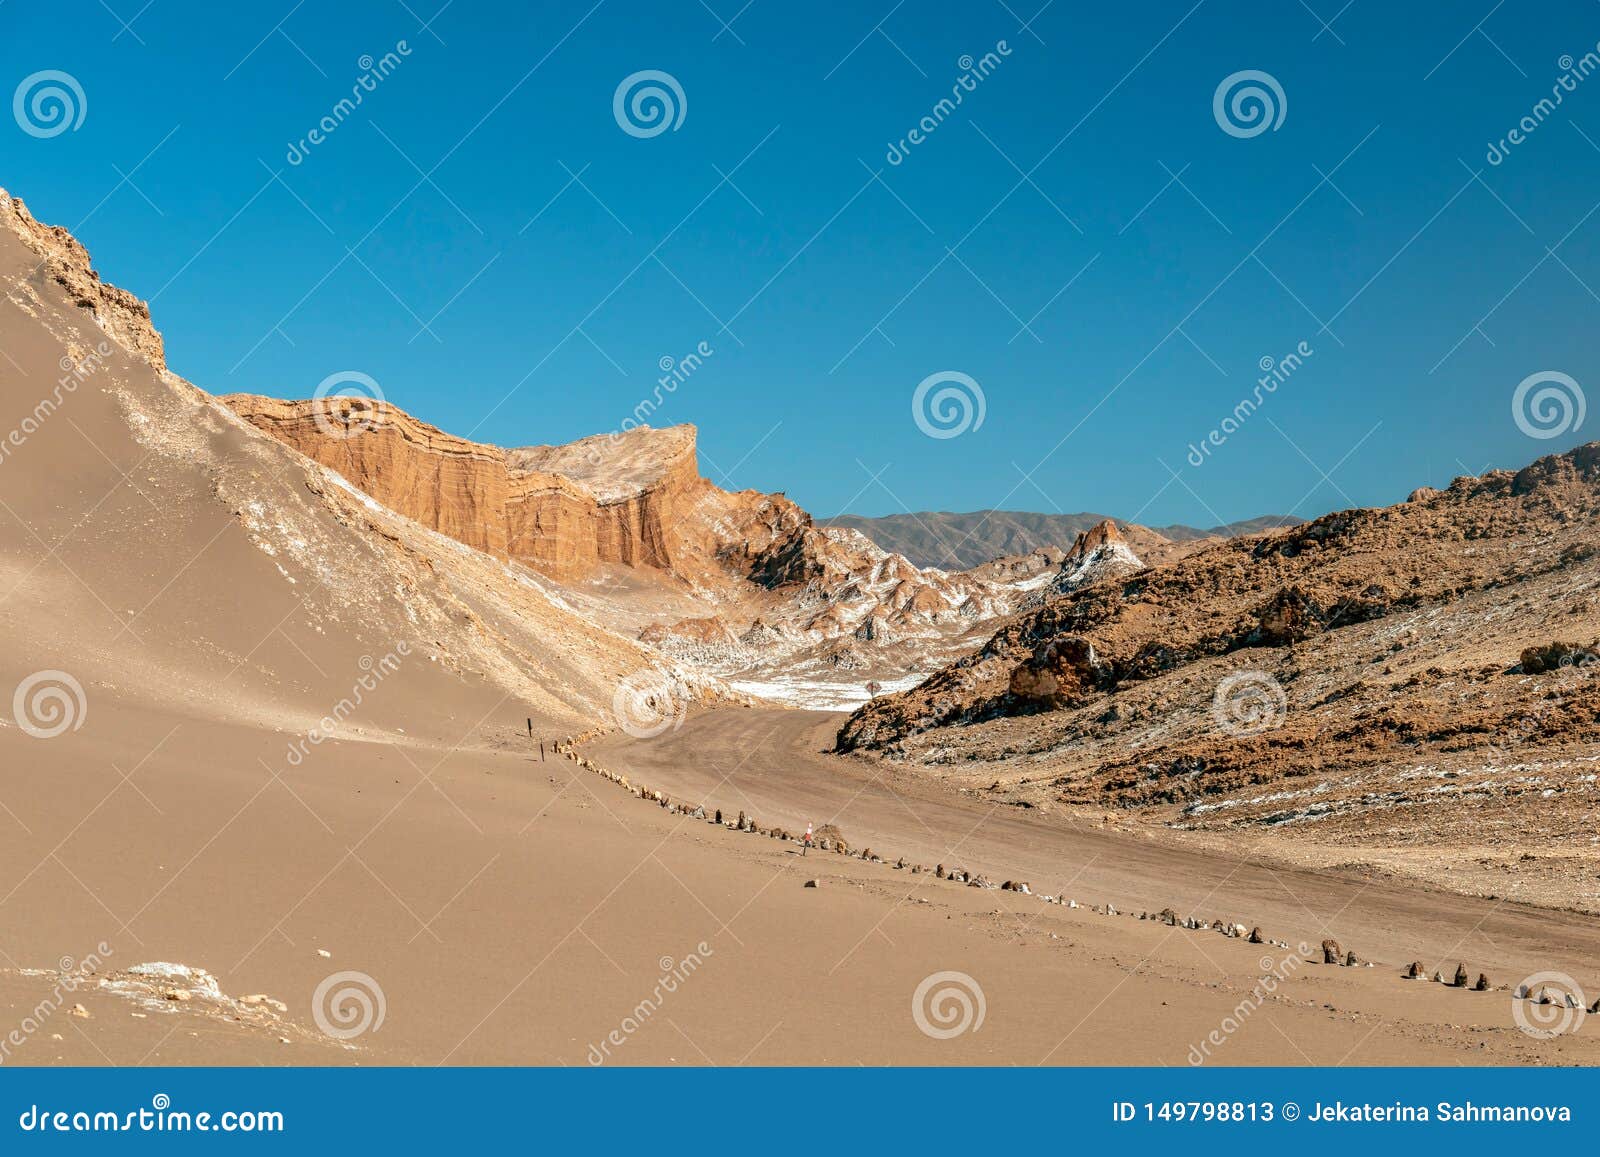 sand dunes in moon valley valle de la luna, atacama desert, chile